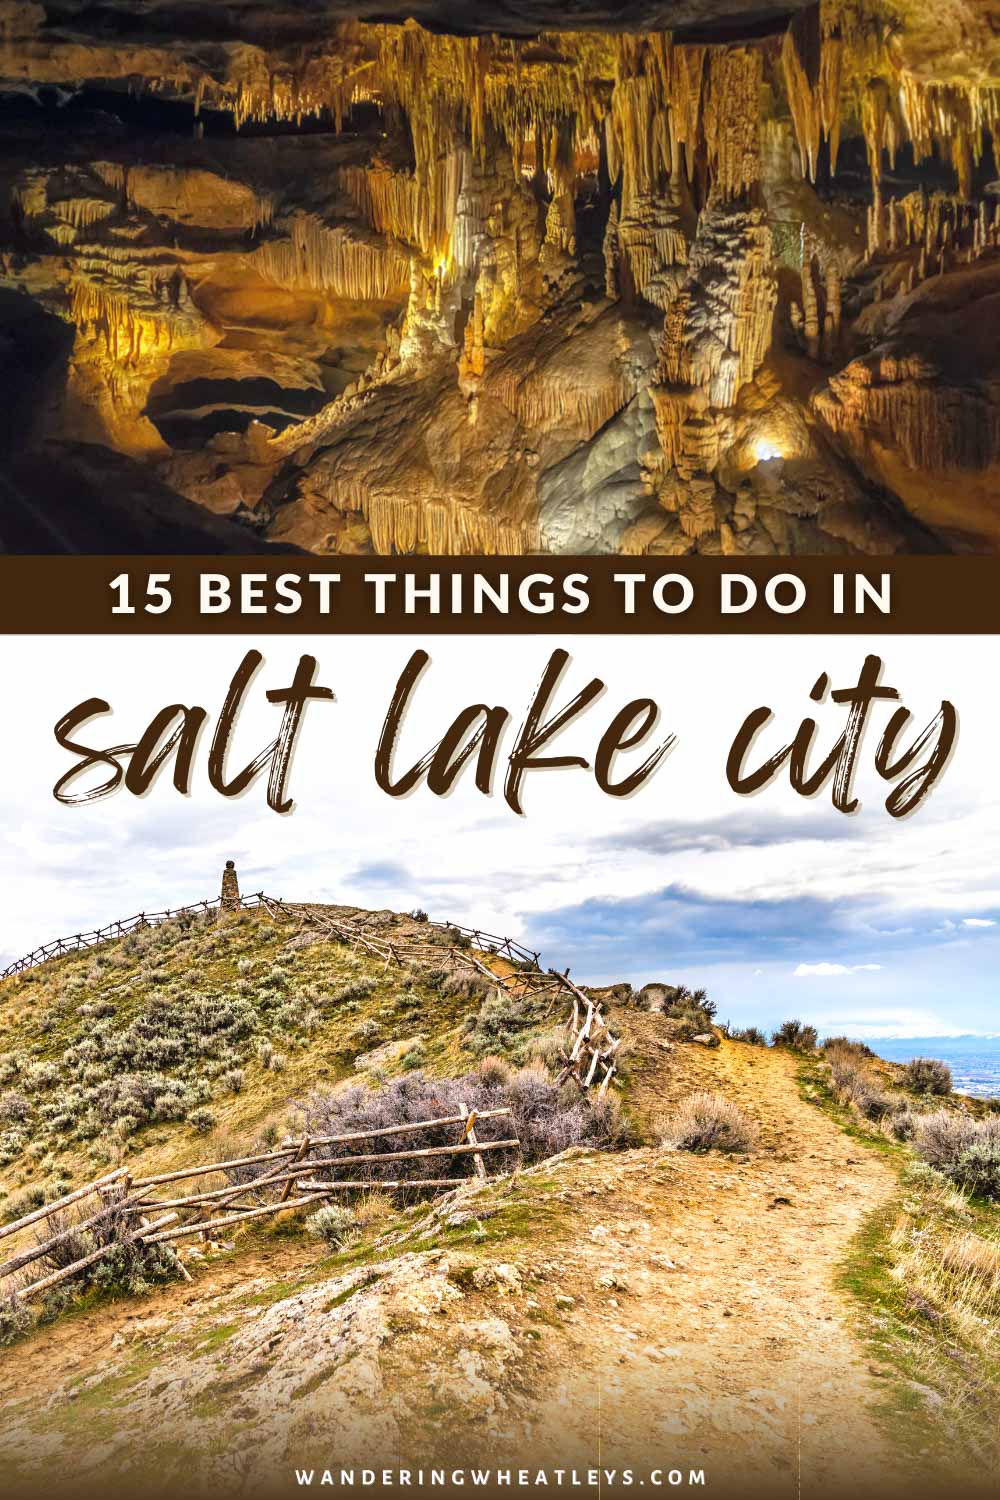 The Best Things to do in Salt Lake City, Utah